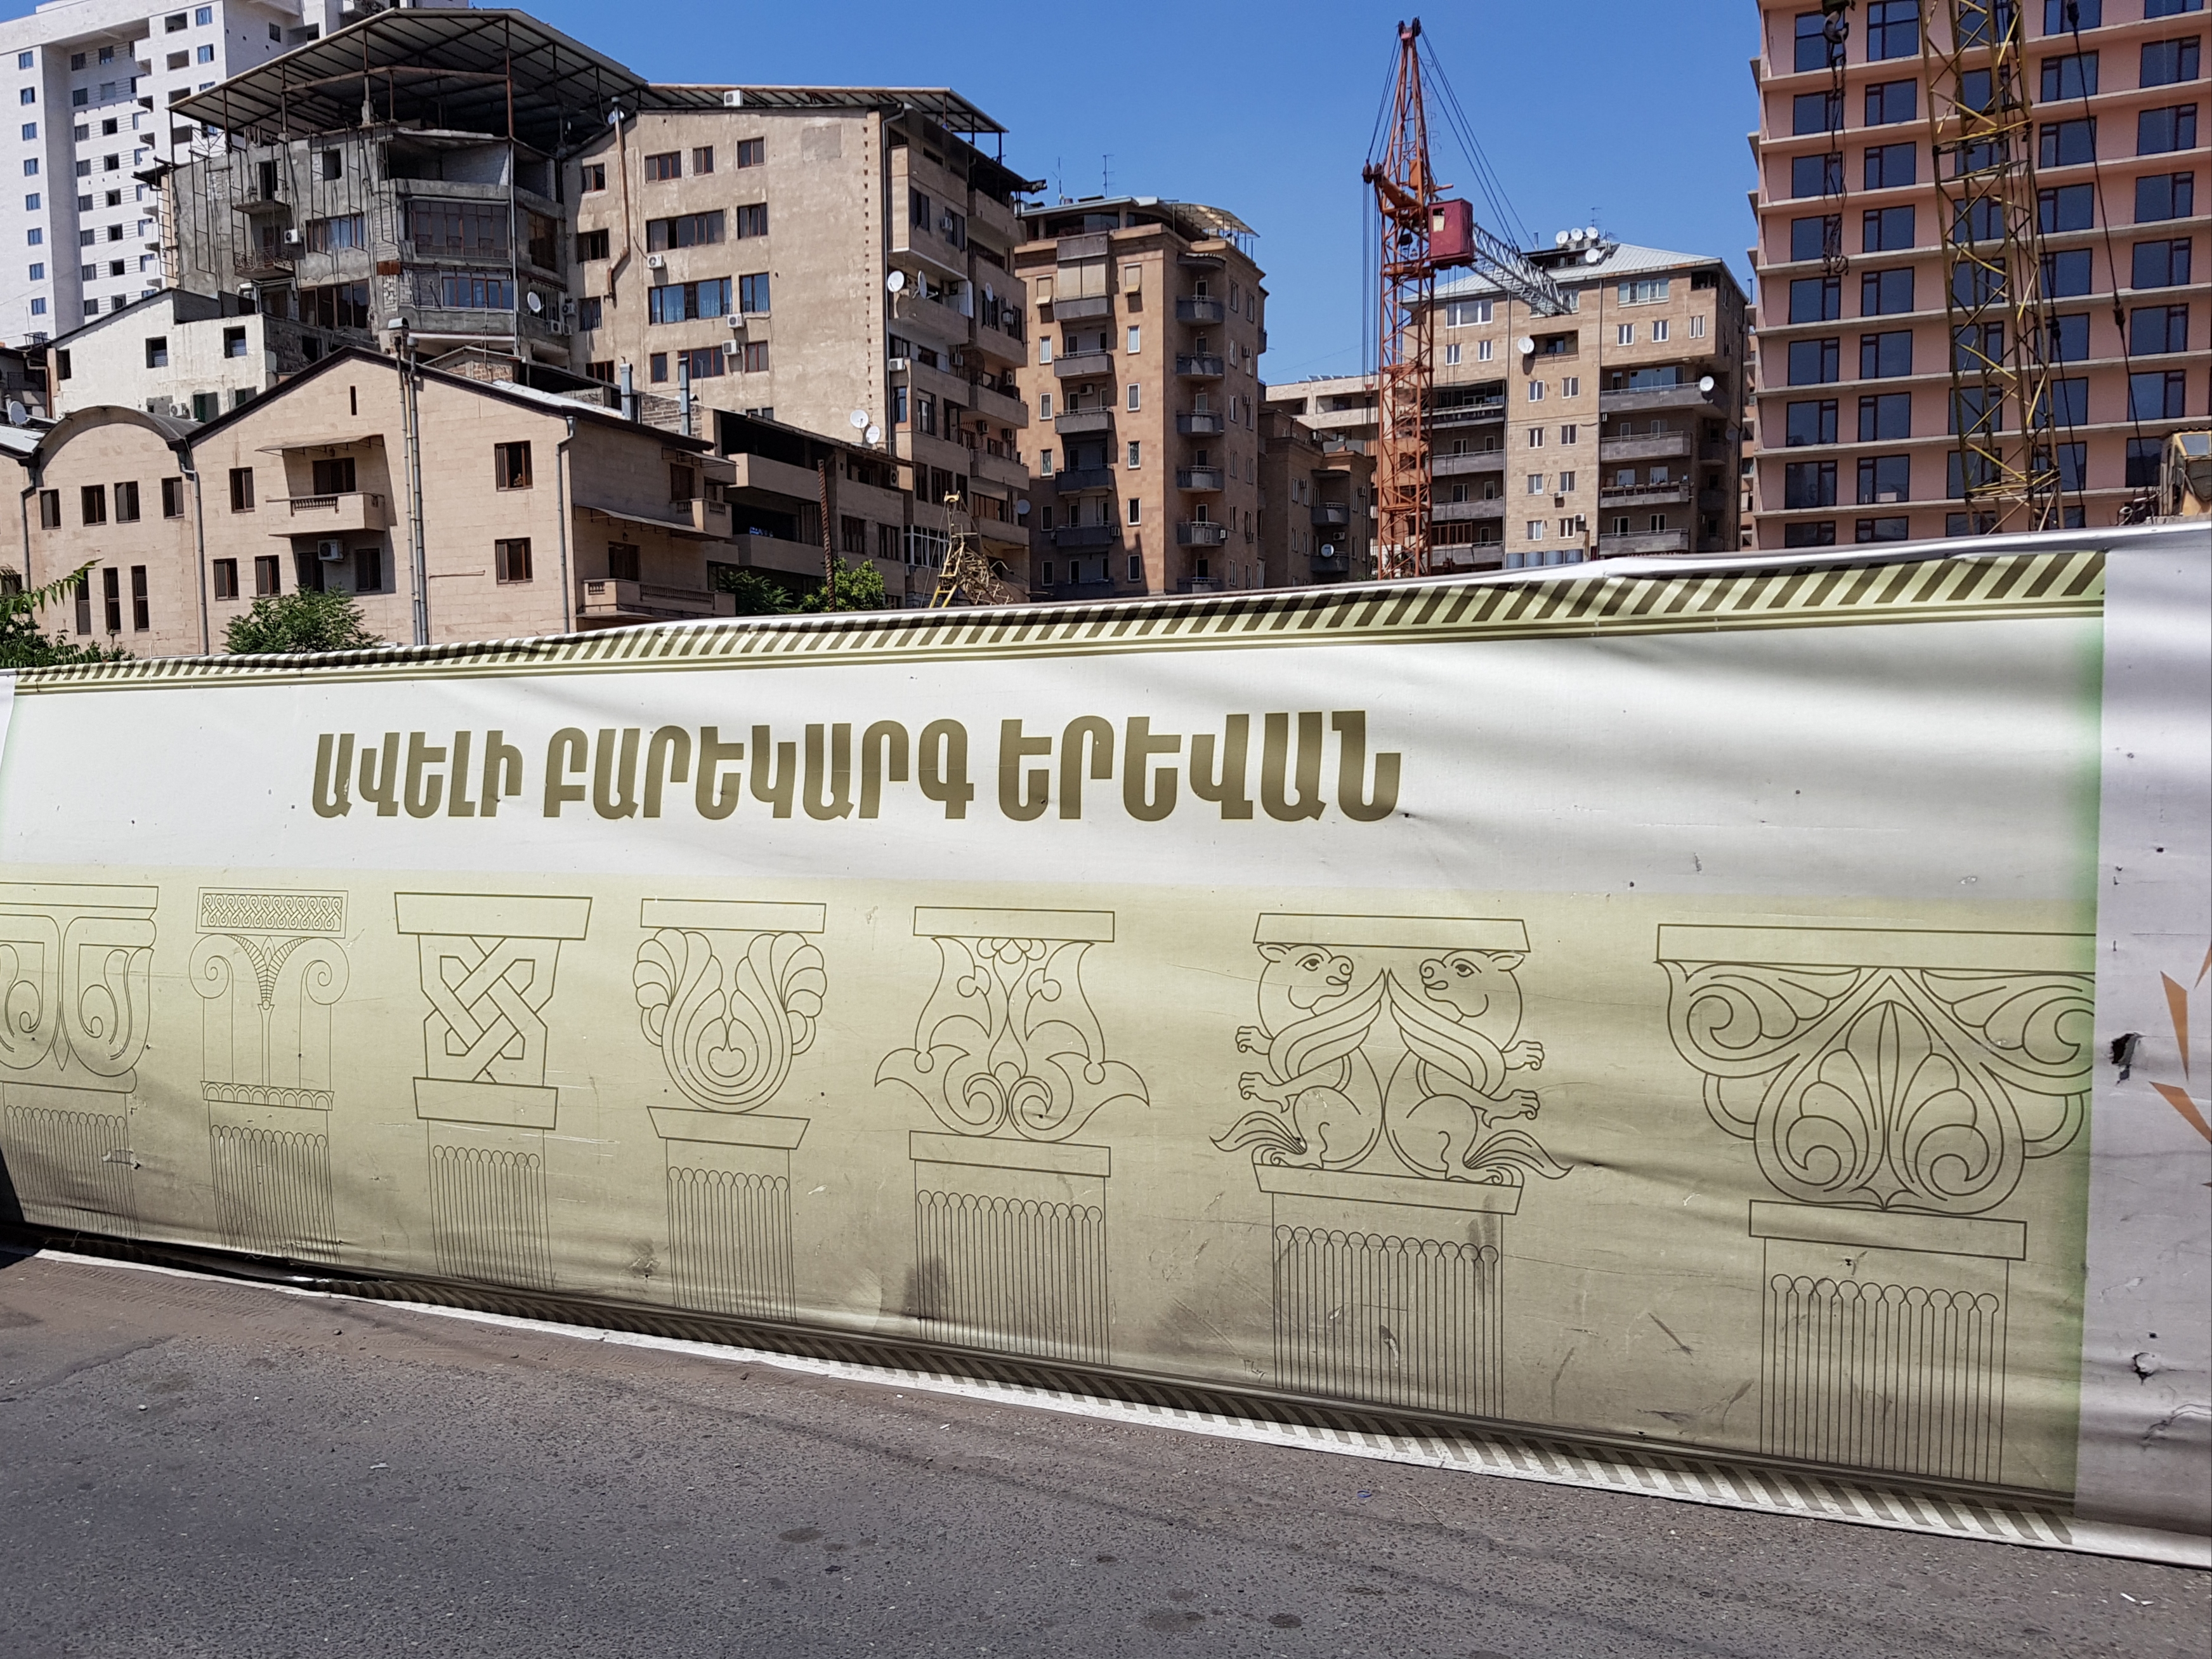 Երևանում կհիմնանորոգվեն կրթամշակութային, առողջապահական հաստատություններ և ճանապարհներ